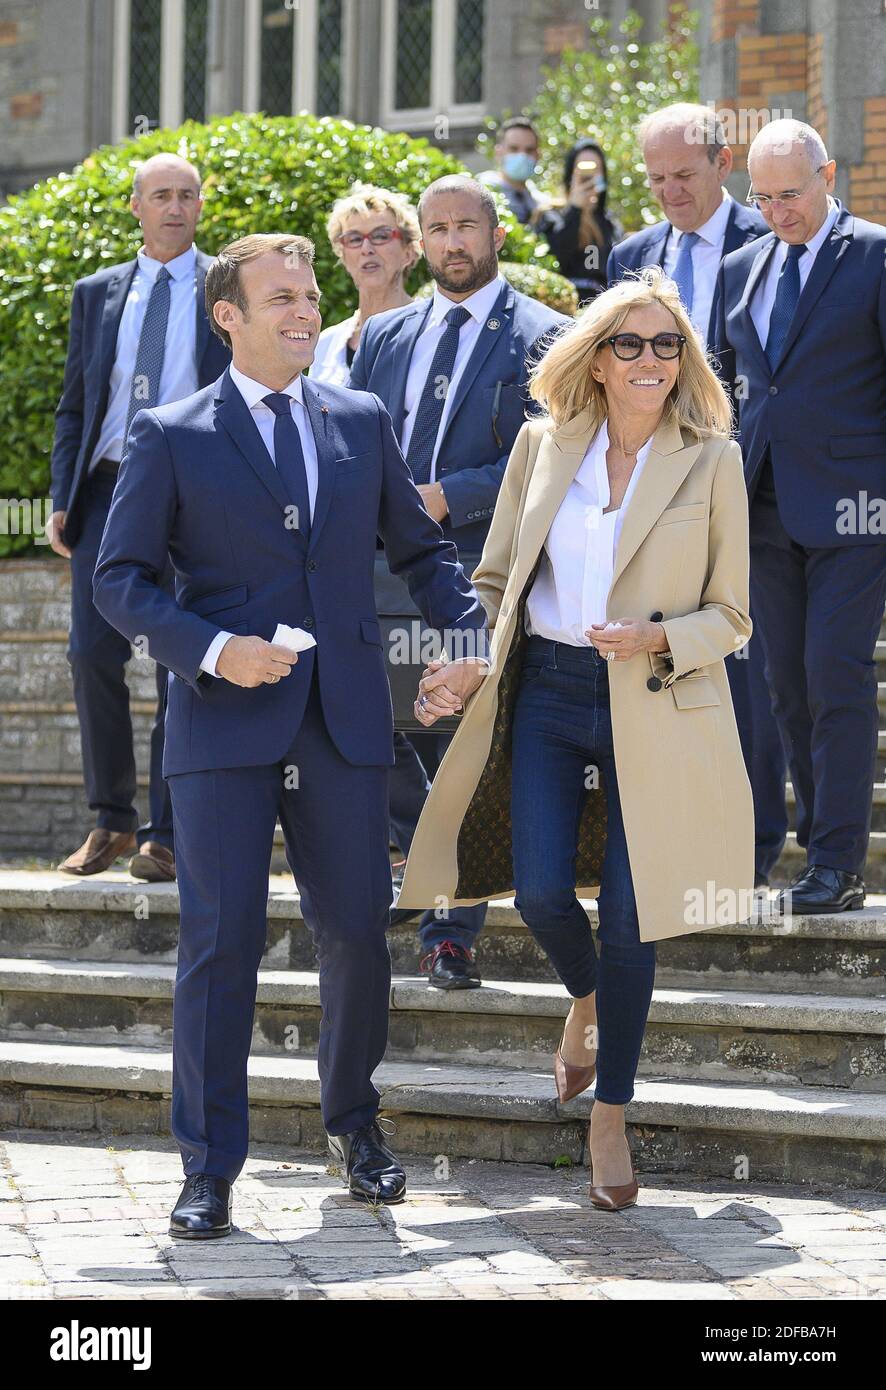 Le président français Emmanuel Macron et son épouse Brigitte Macron quittent leur bureau de vote au Touquet, dans le nord de la France, le 28 juin 2020. Photo par Eliot Blondt/ABACAPRESS.COM Banque D'Images